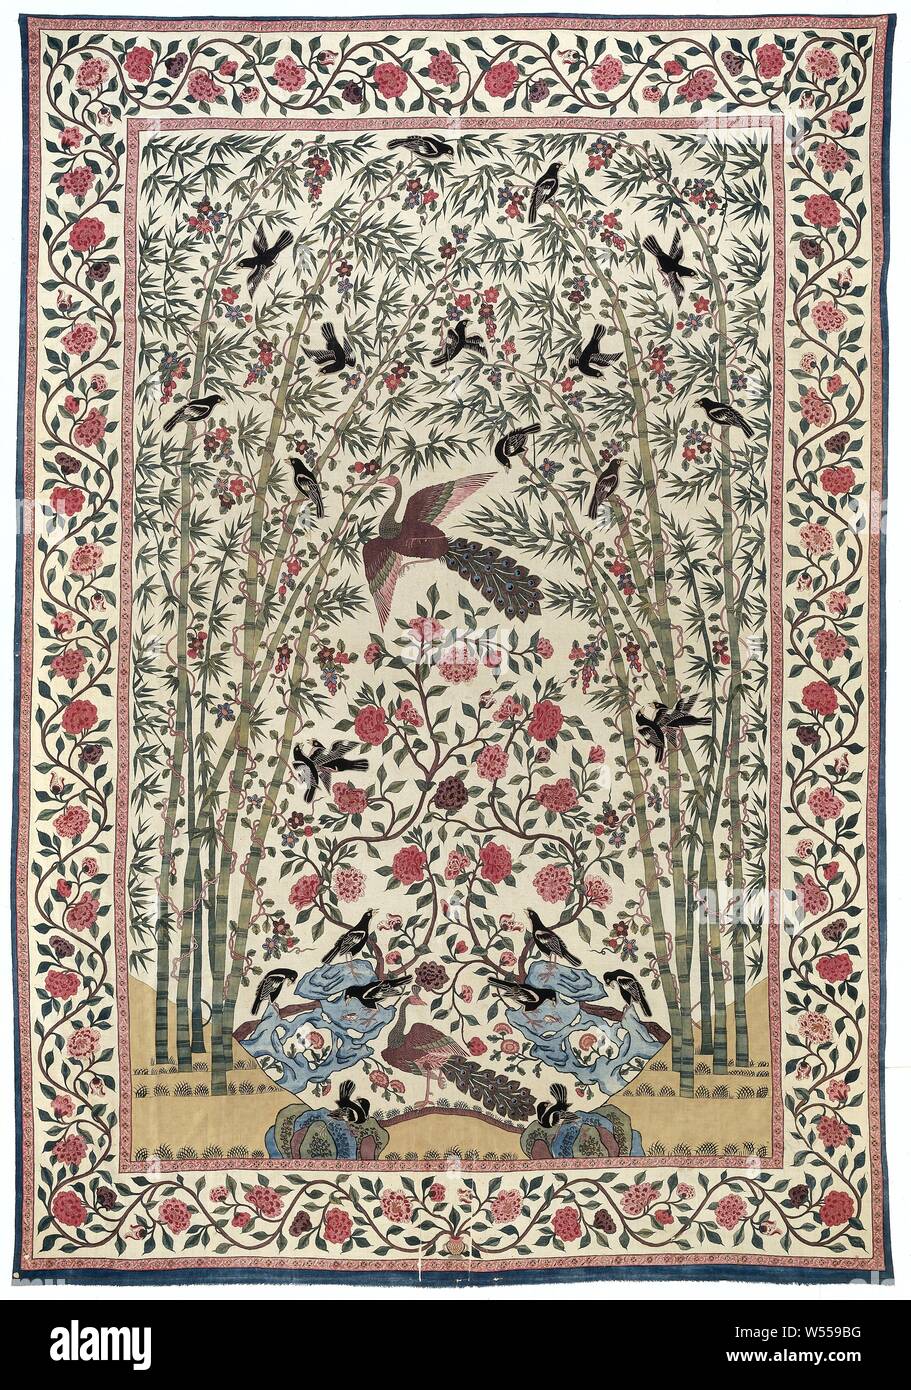 Palempore, Baumwolle palempore mit Pfauen und schwarzen Vögel in einem Bambushain. Mehrfarbige sitzt., anonym, Noordwest-India, C. 1750 - C. 1775, Baumwolle (Textil), Kitsch, H 339,0 cm × w 277,0 cm Stockfoto